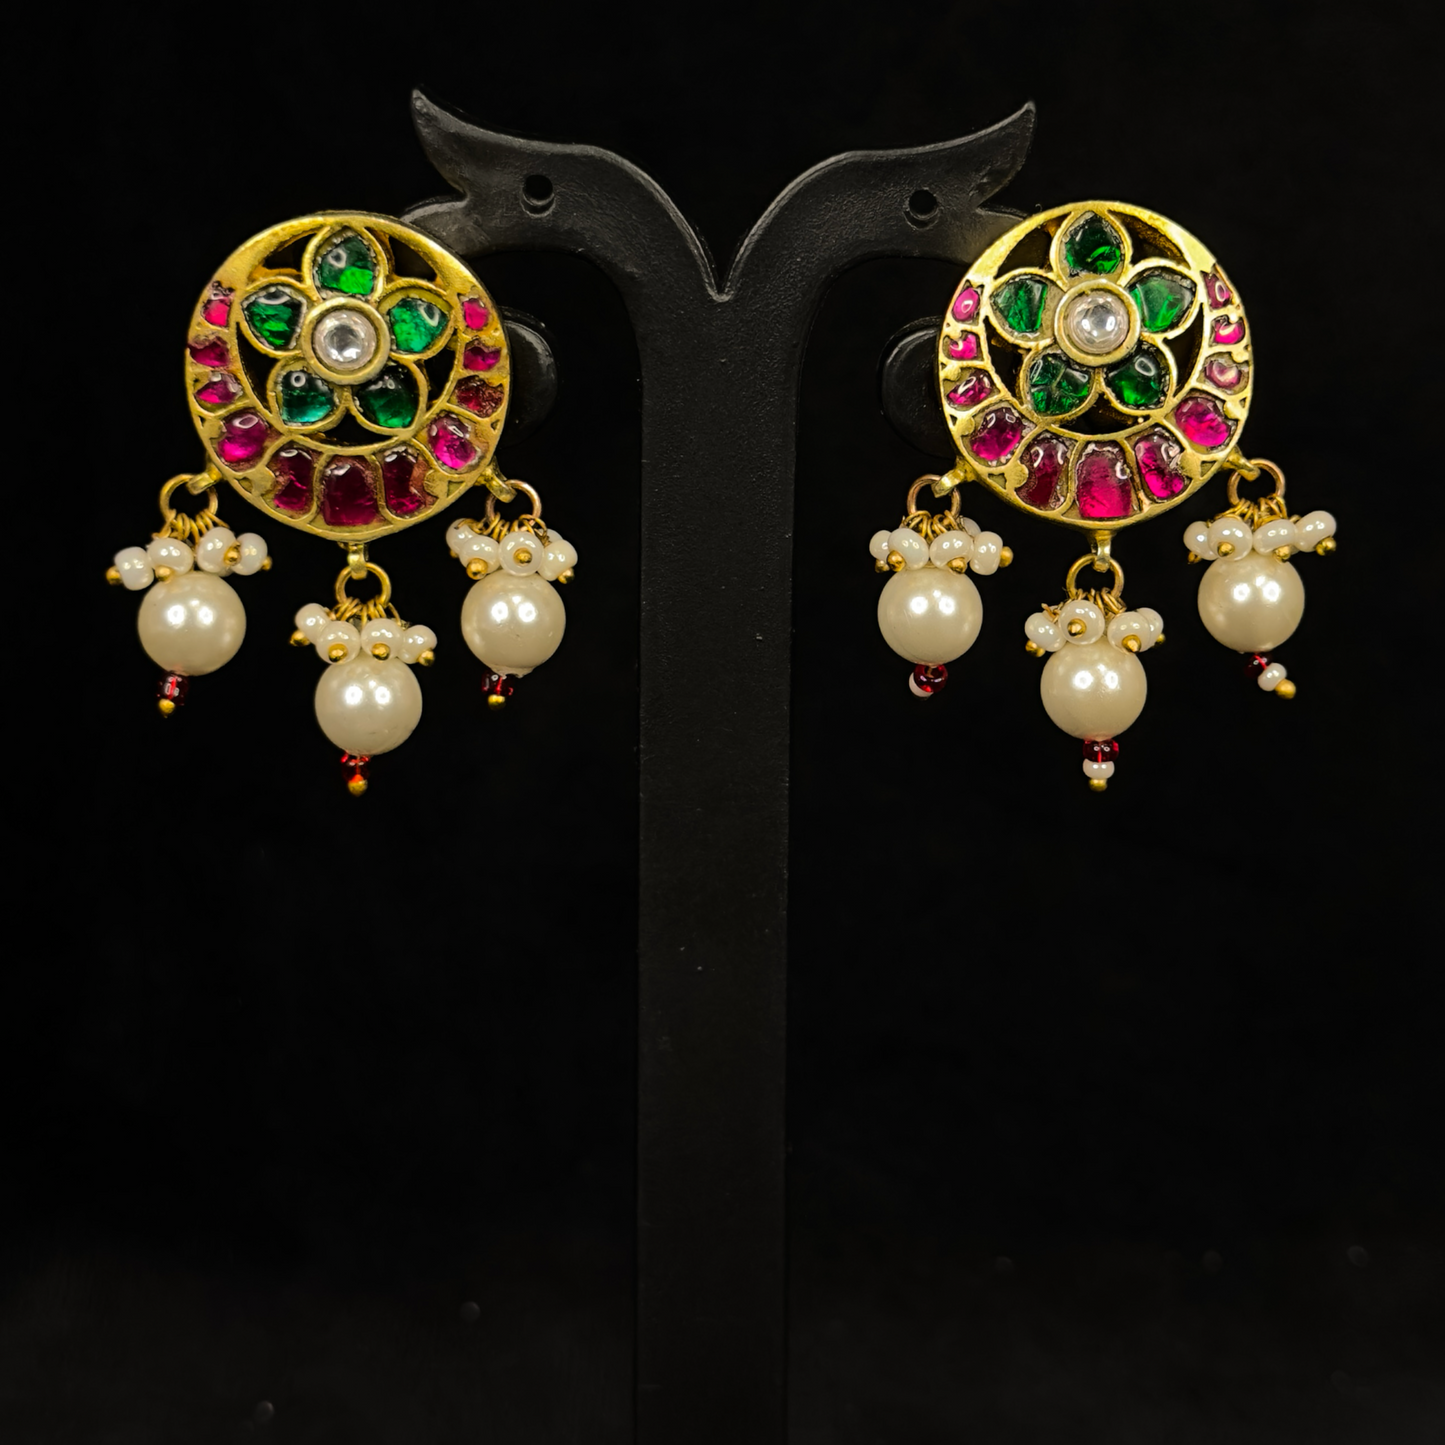 Intricate Flower Stud Earrings in Jadau Kundan with Pearls